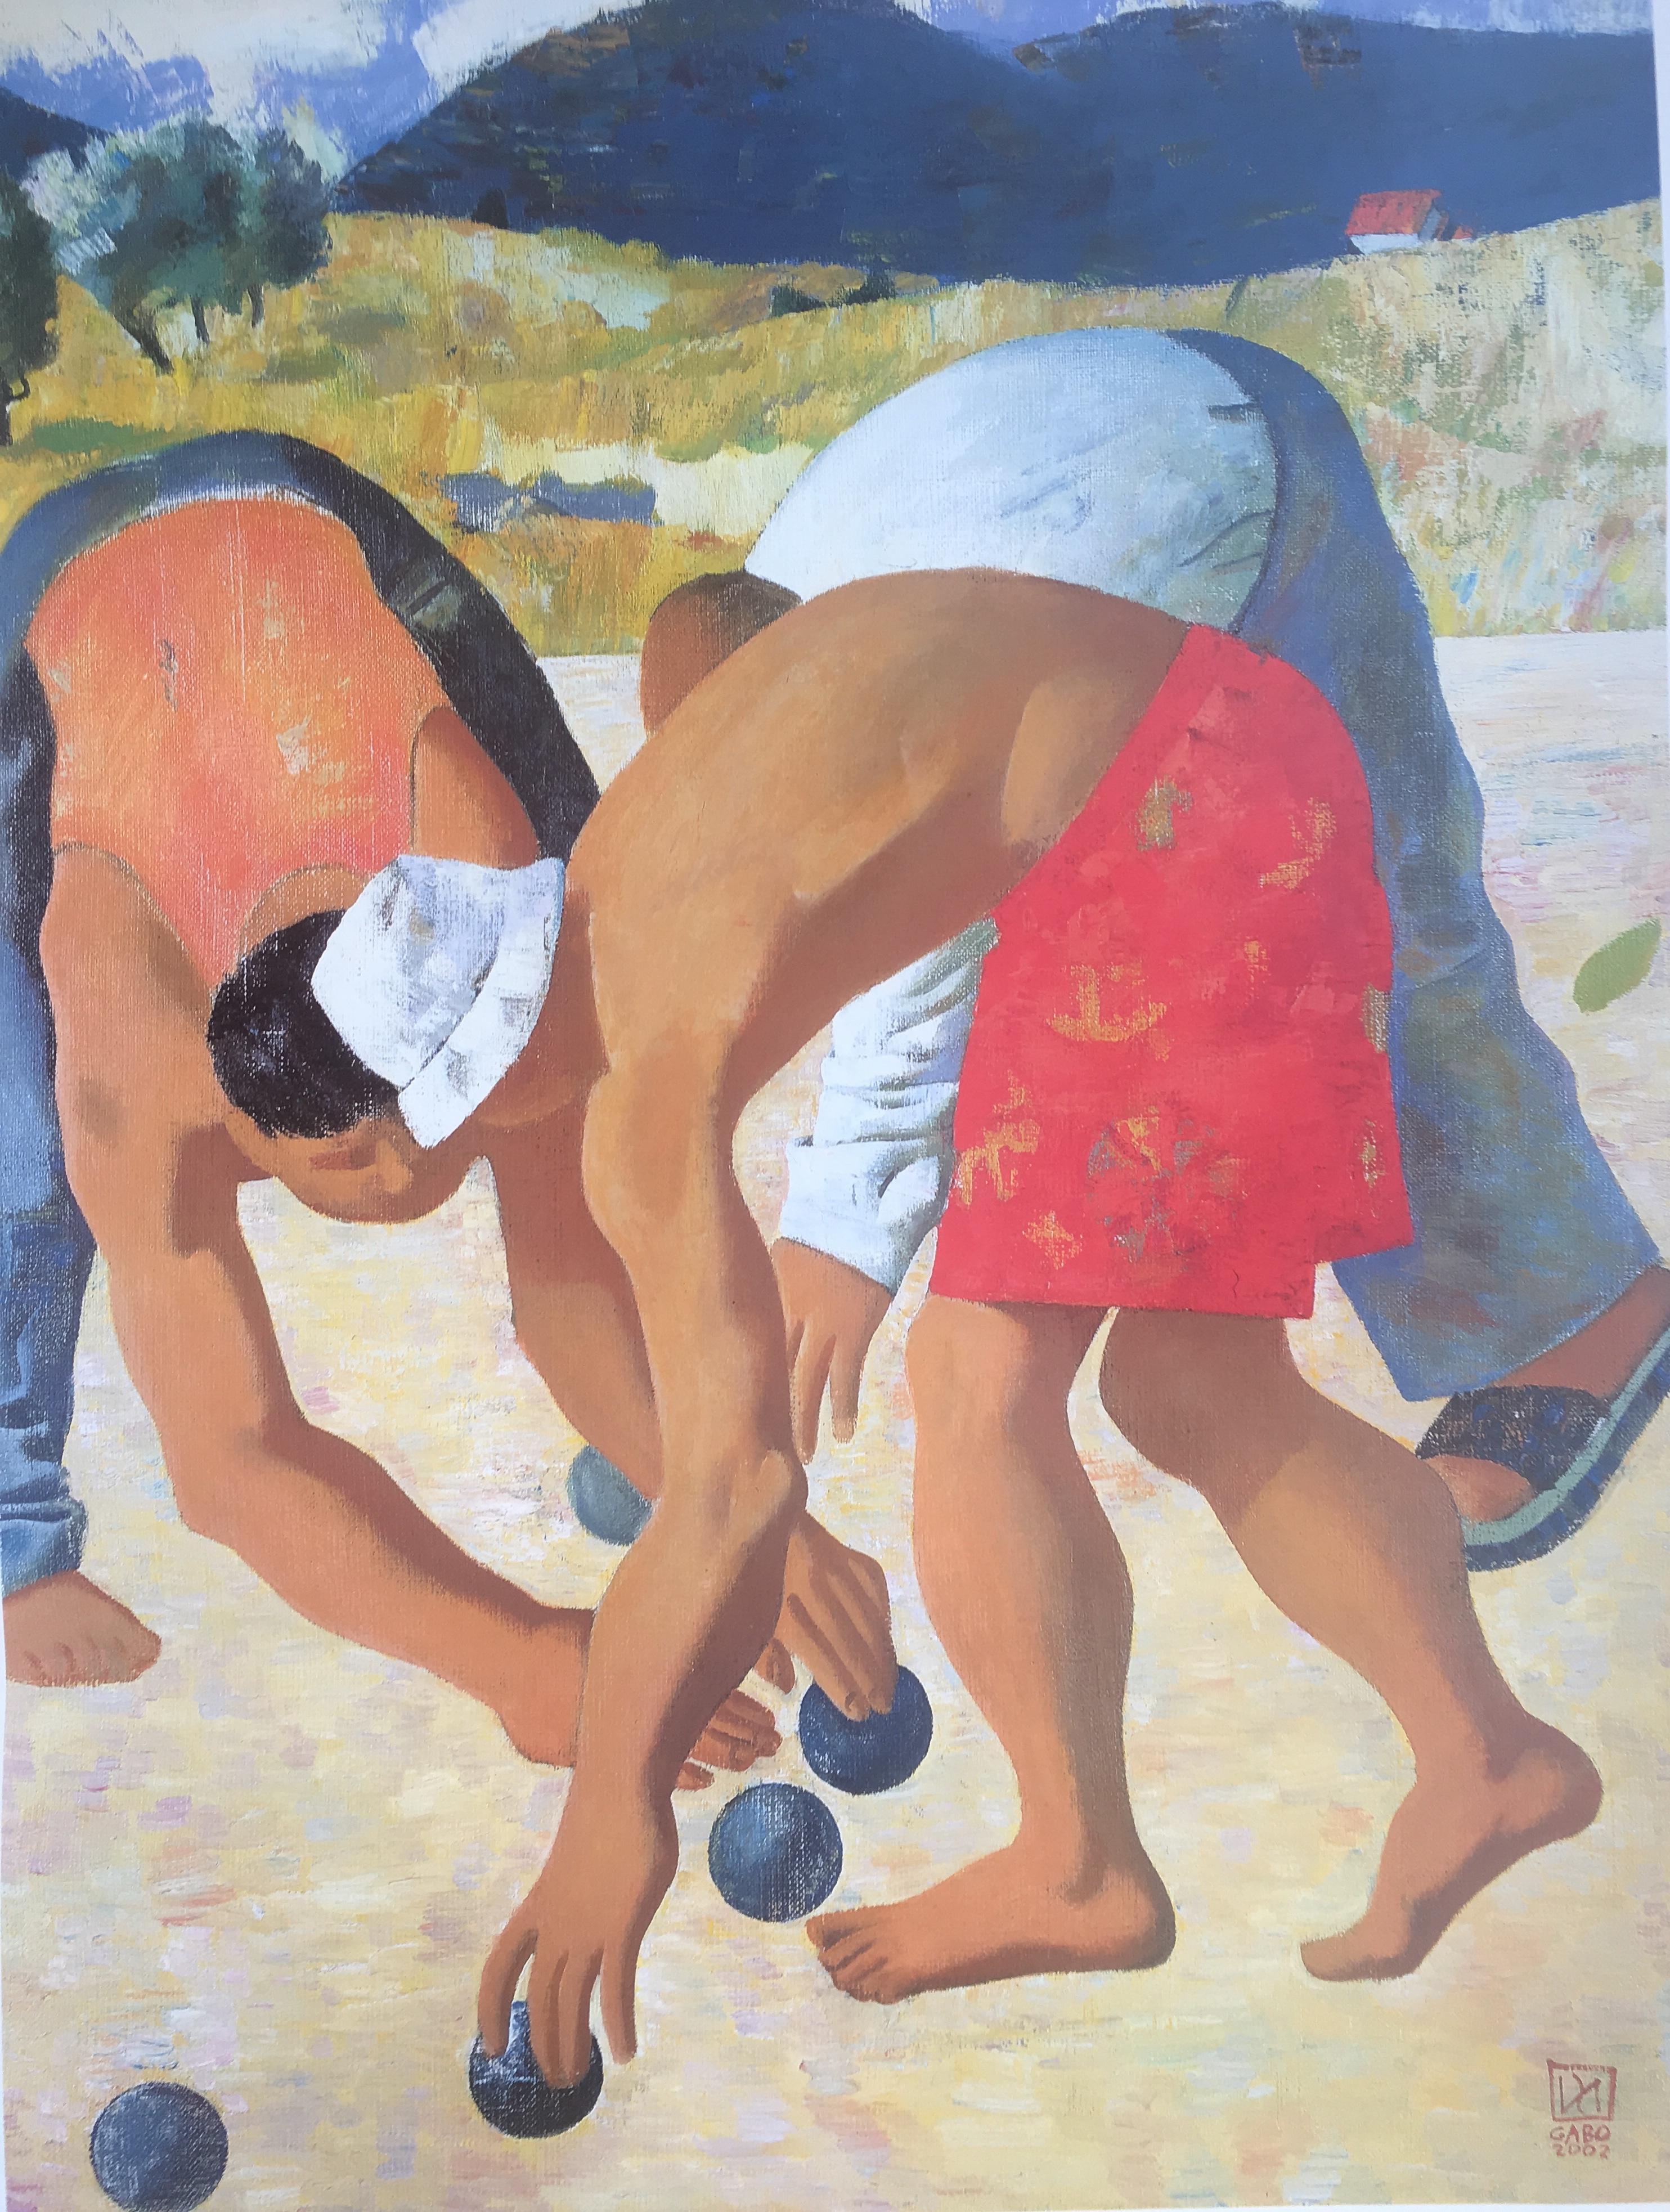 Affiche d'art originale représentant des hommes jouant à la pétanque ou à la boulle en Provence. Gabo est un artiste mexicain qui vit en Provence. 

Ce poster a des couleurs très vives, un sujet joyeux.